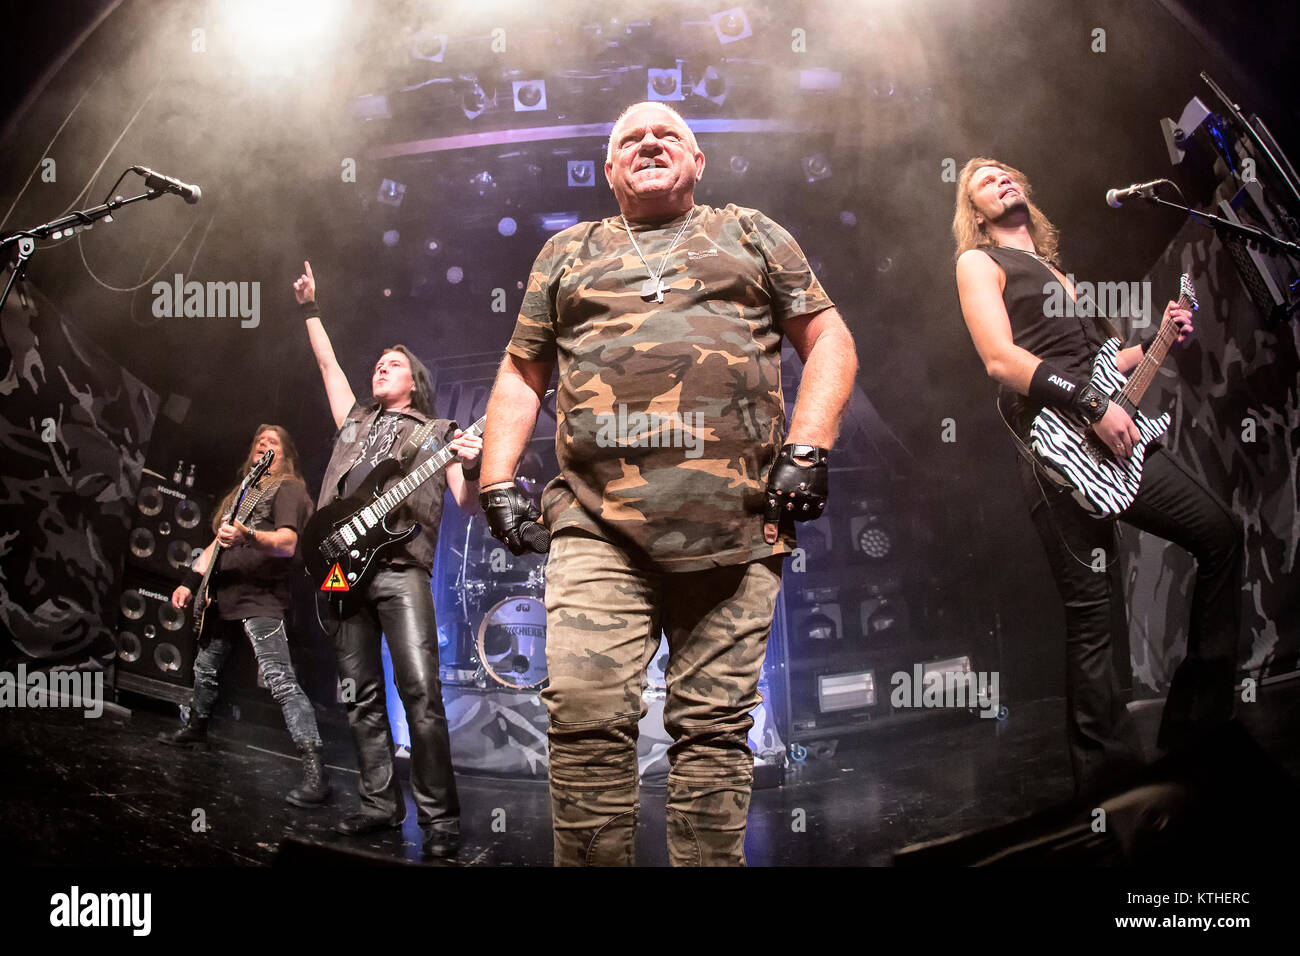 Il tedesco heavy metal band U.D.O. esegue un concerto dal vivo a livello di  Unione europea in scena a Oslo. Qui band fondatore e cantante Udo  Dirkschneider è visto dal vivo sul